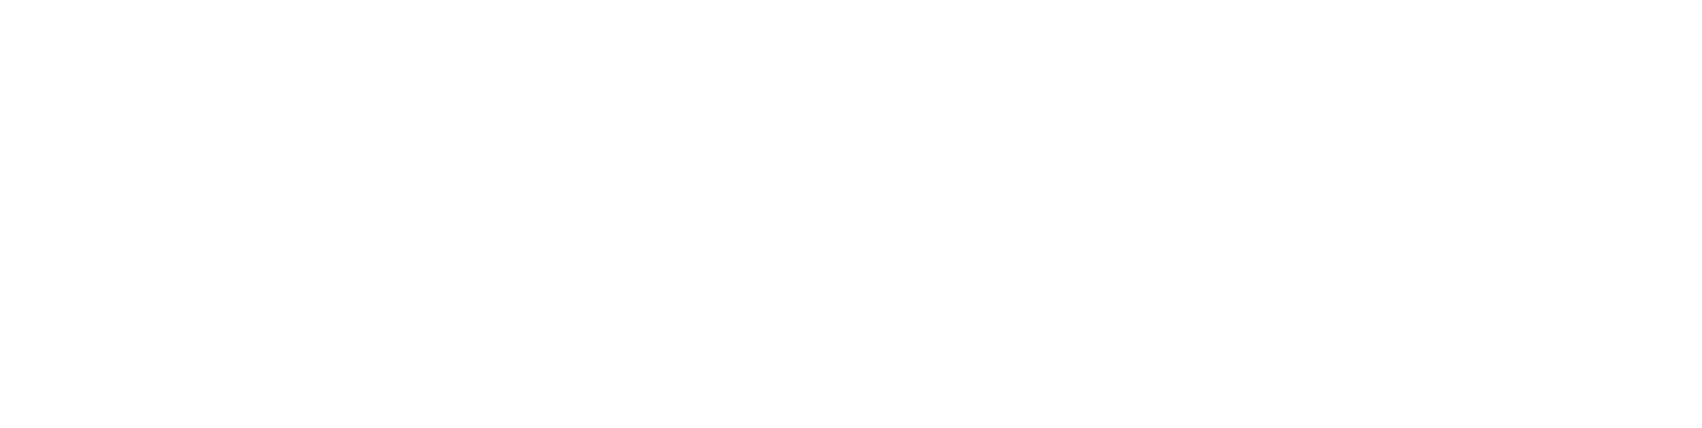 Stryker Corporation logo grand pour les fonds sombres (PNG transparent)